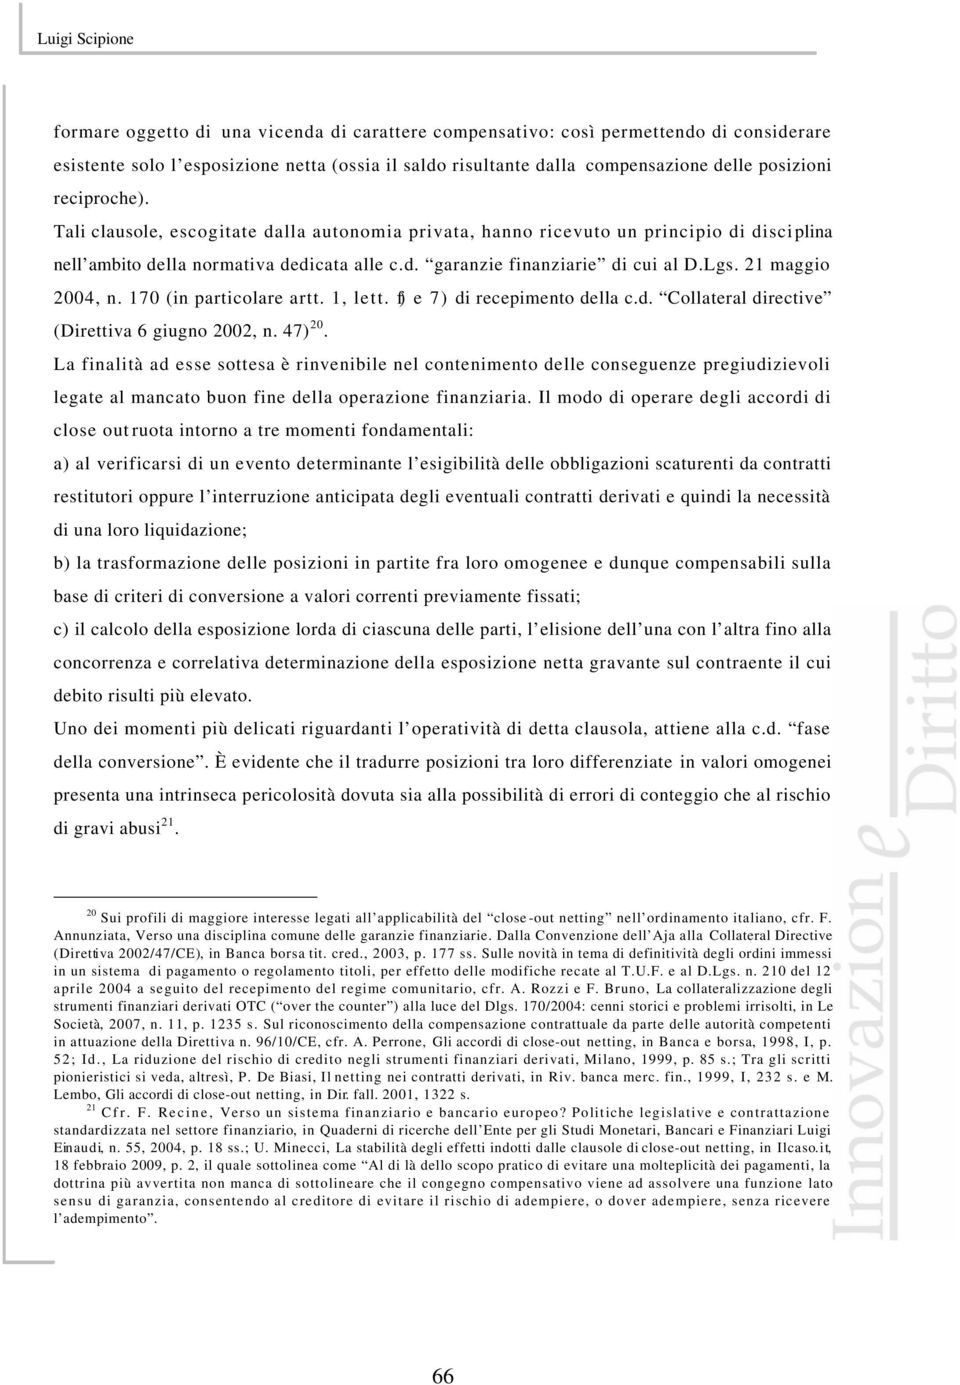 21 maggio 2004, n. 170 (in particolare artt. 1, lett. f) e 7) di recepimento della c.d. Collateral directive (Direttiva 6 giugno 2002, n. 47) 20.